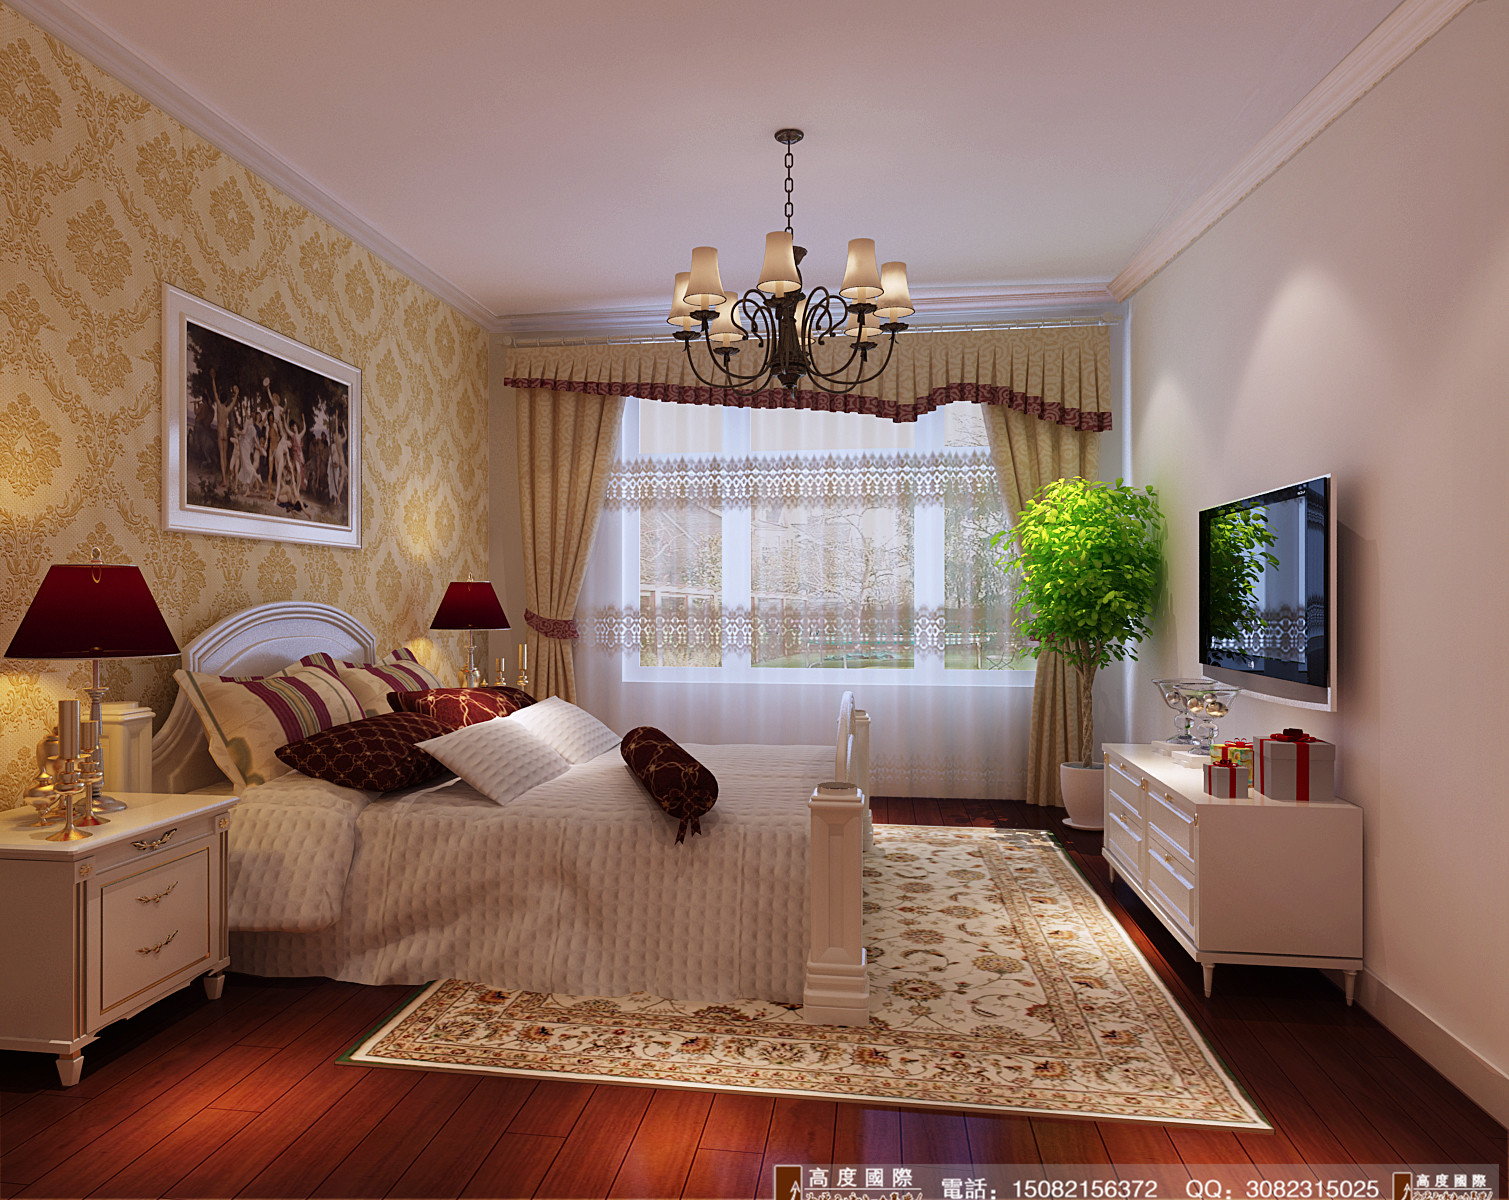 高度国际 卧室图片来自成都高端别墅装修瑞瑞在103平米欧式风格-成都高度国际的分享